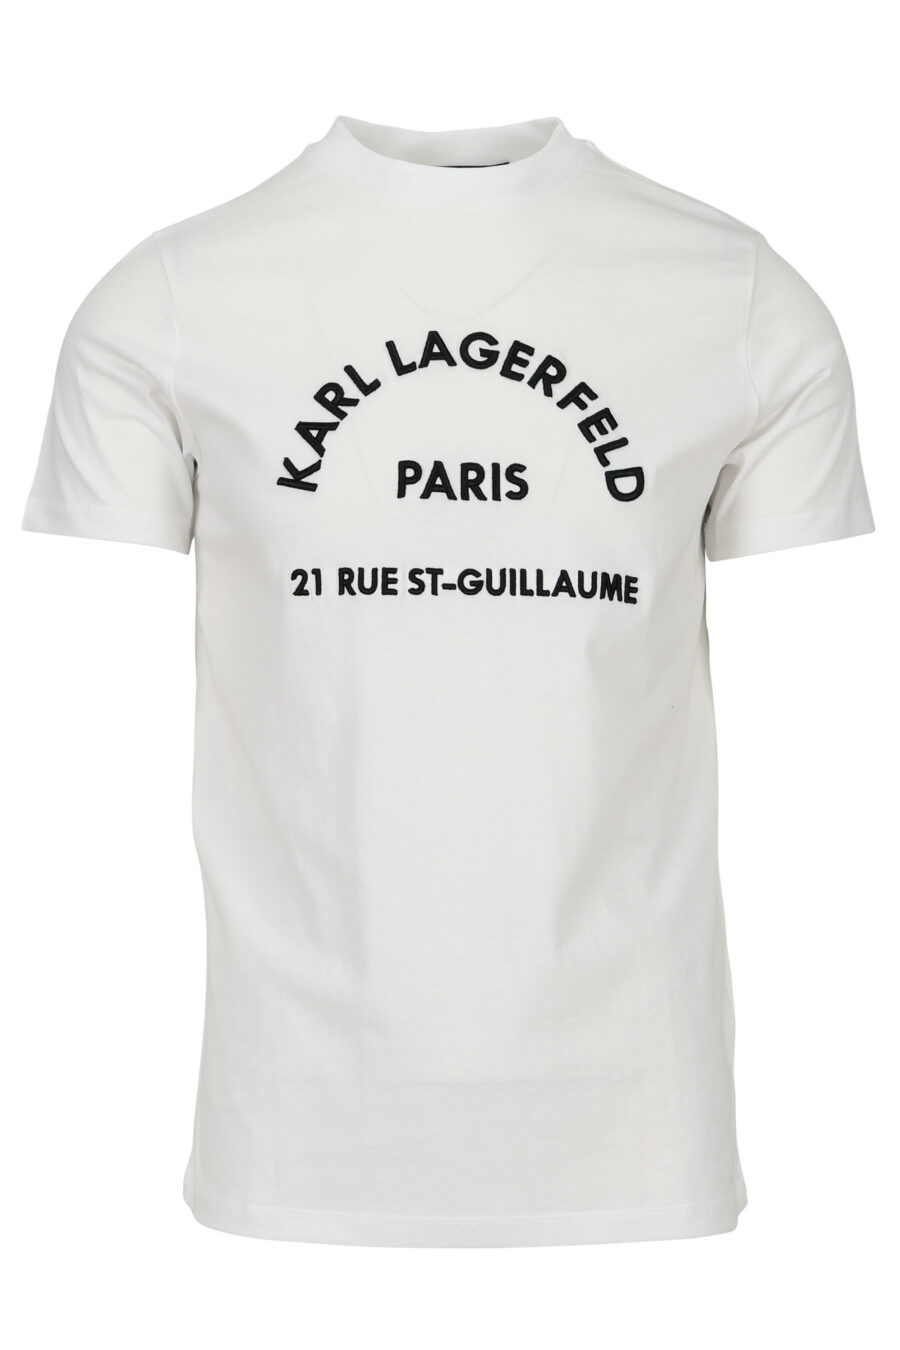 Camiseta blanca con maxilogo "rue st guillaume" en relieve - 4062226963244